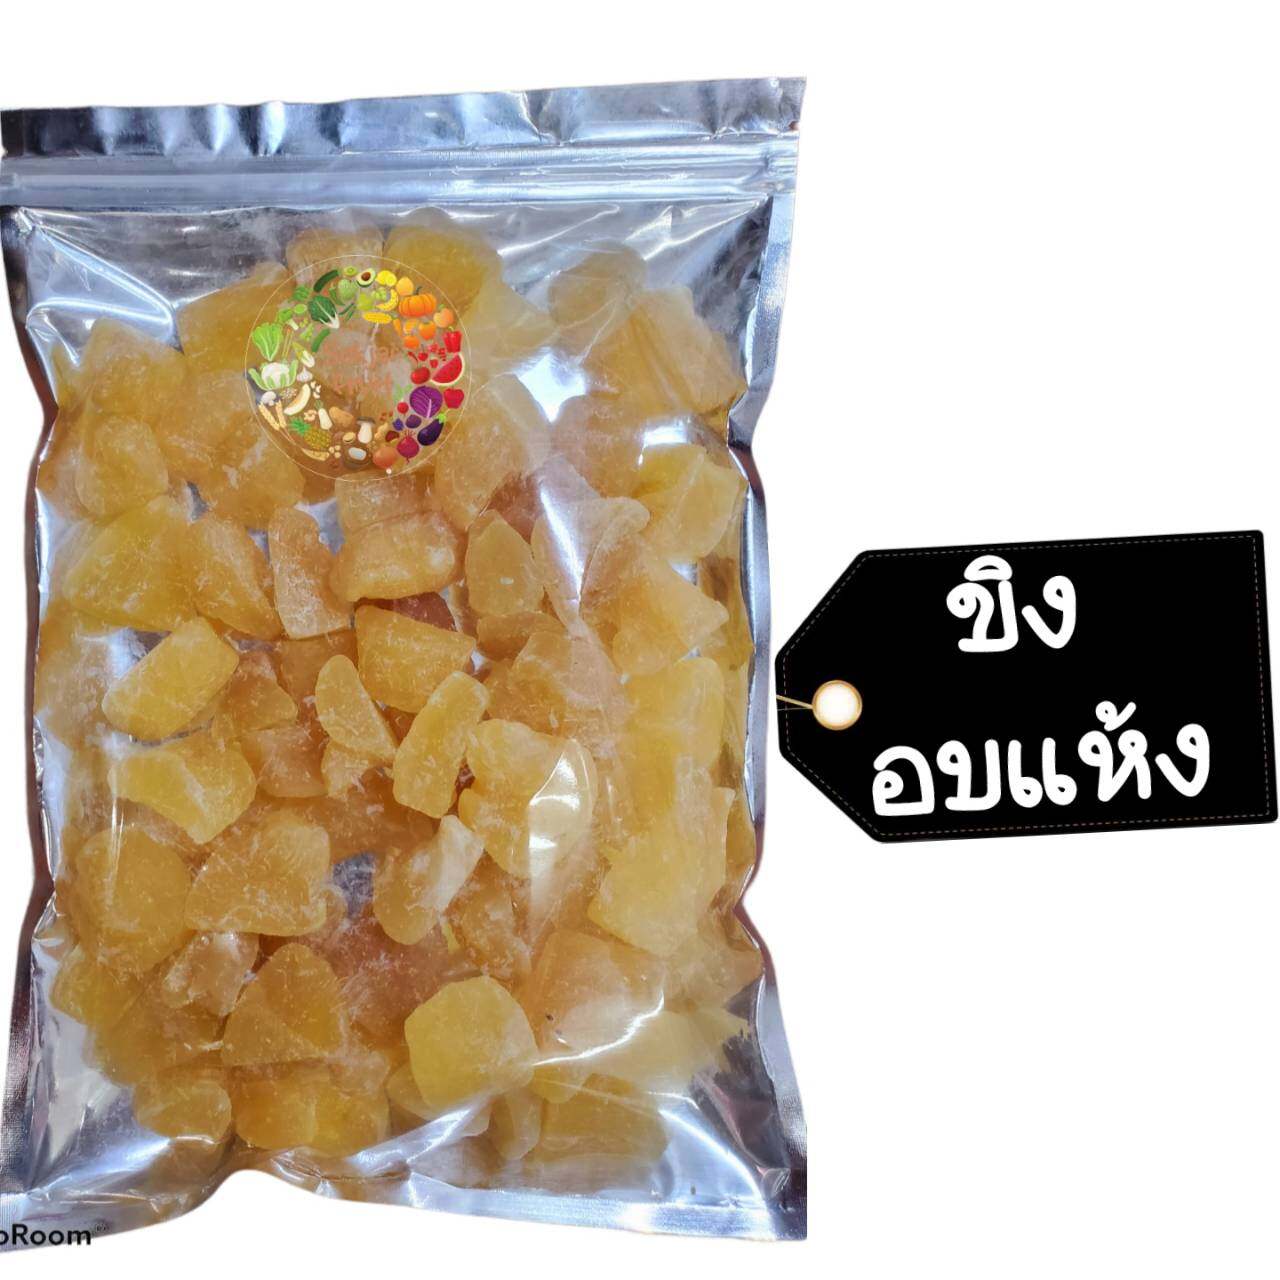 ขิง แช่อิ่ม 80 กรัม  - Crystallized Ginger 80 g  - Dried fruit ผลไม้ อบแห้ง ขนมไทย ขนม OTOP บ๊วย ผลไม้อบแห้ง บ๊วย ผลไม้อบแห้ง